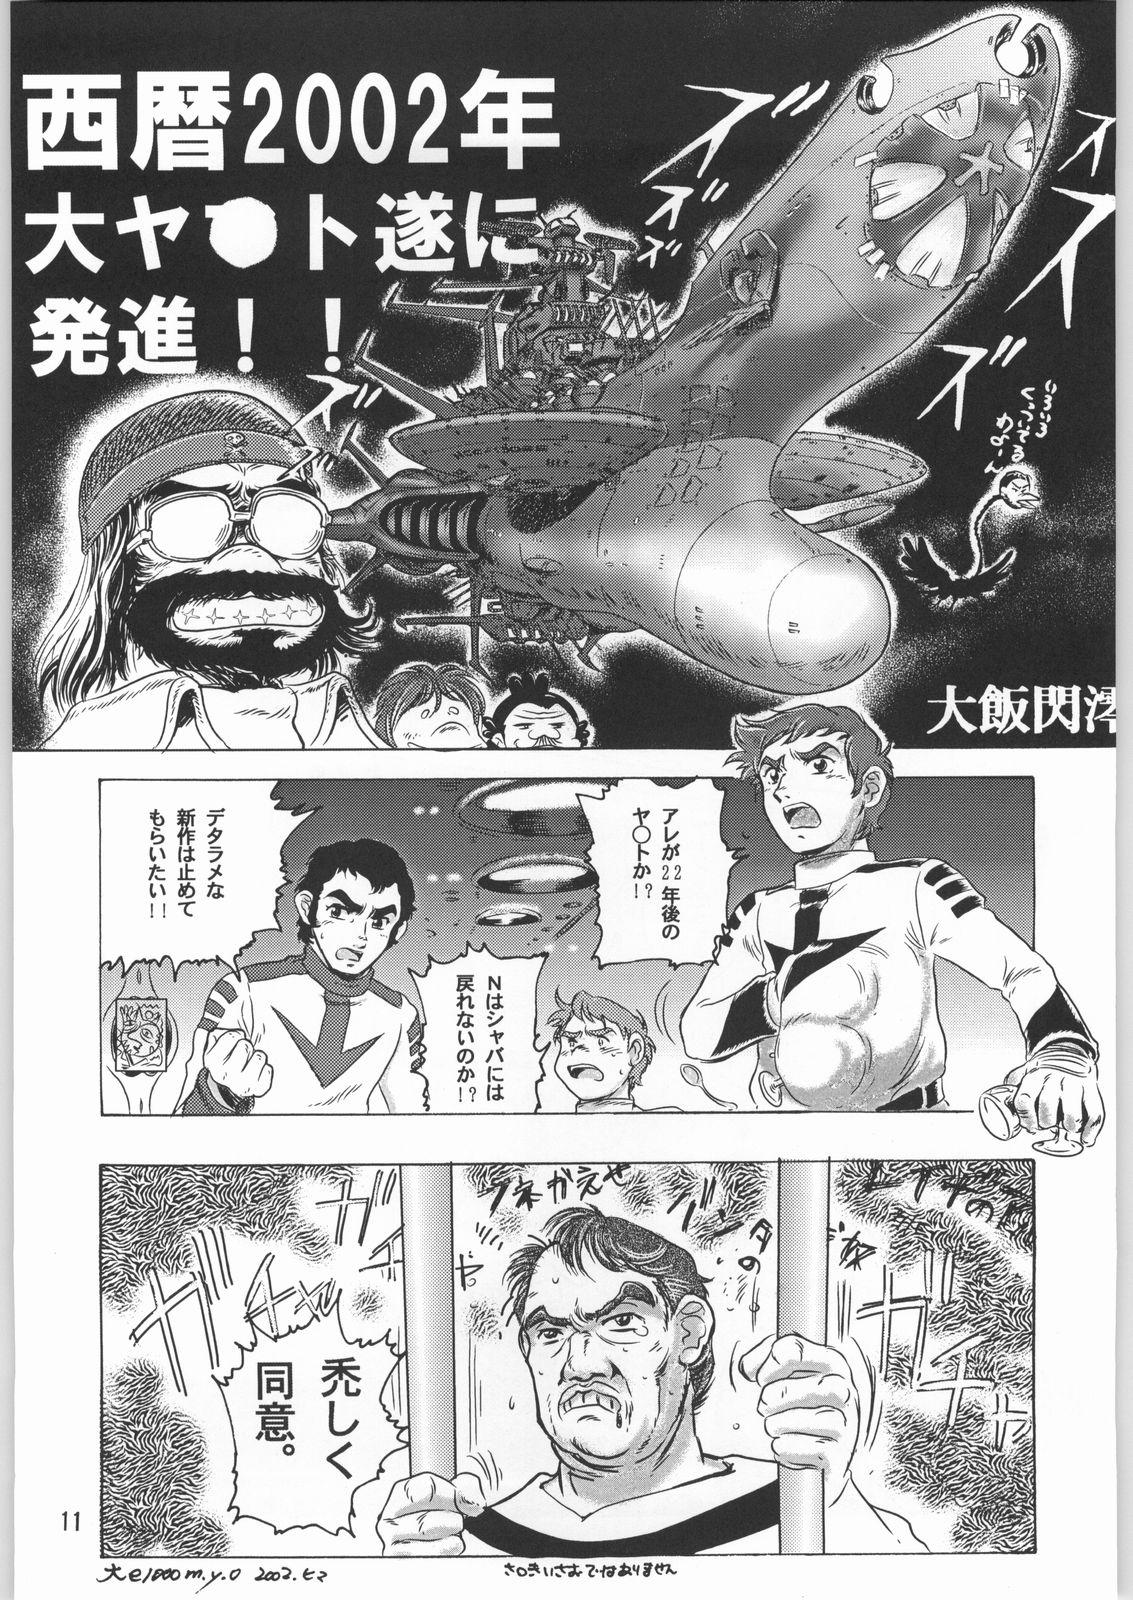 Young Petite Porn Megaton Punch 1 - Space battleship yamato Chobits Egypt - Page 10